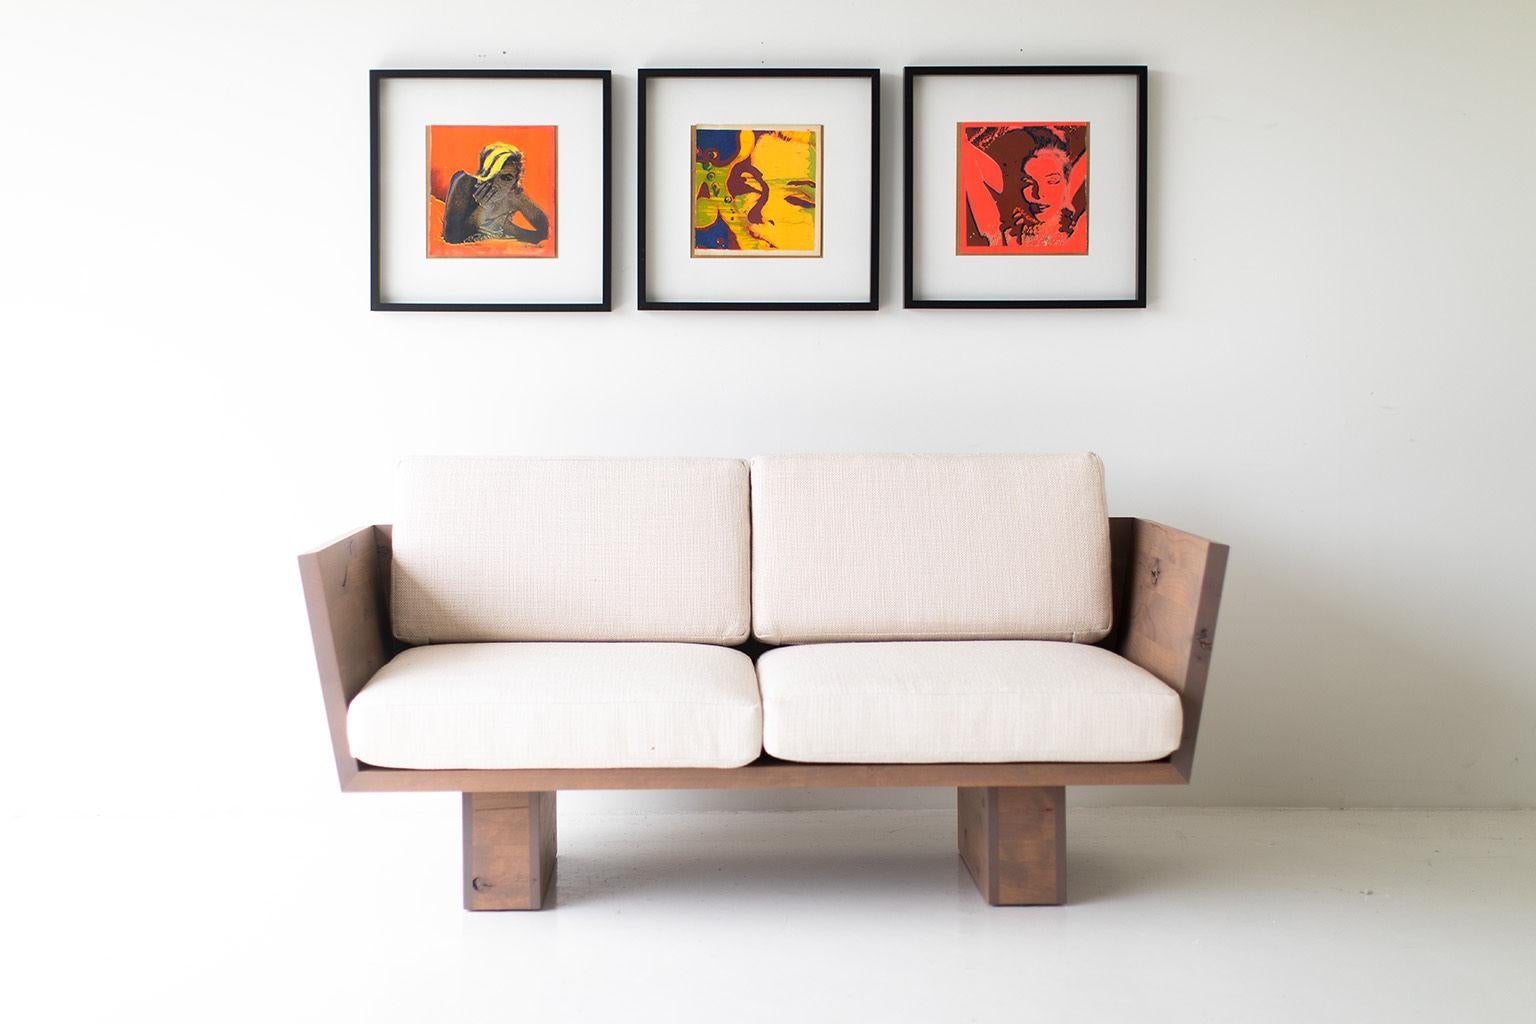 Dieser Suelo Modern Loveseat wurde in Ohio, USA, aus Massivholz gefertigt. Die Silhouette des Sofas ist einfach, modern und schlank, mit bequemen Rücken- und Sitzkissen. Dies ist der perfekte Liegesessel für jeden Raum, ob drinnen oder draußen. Die